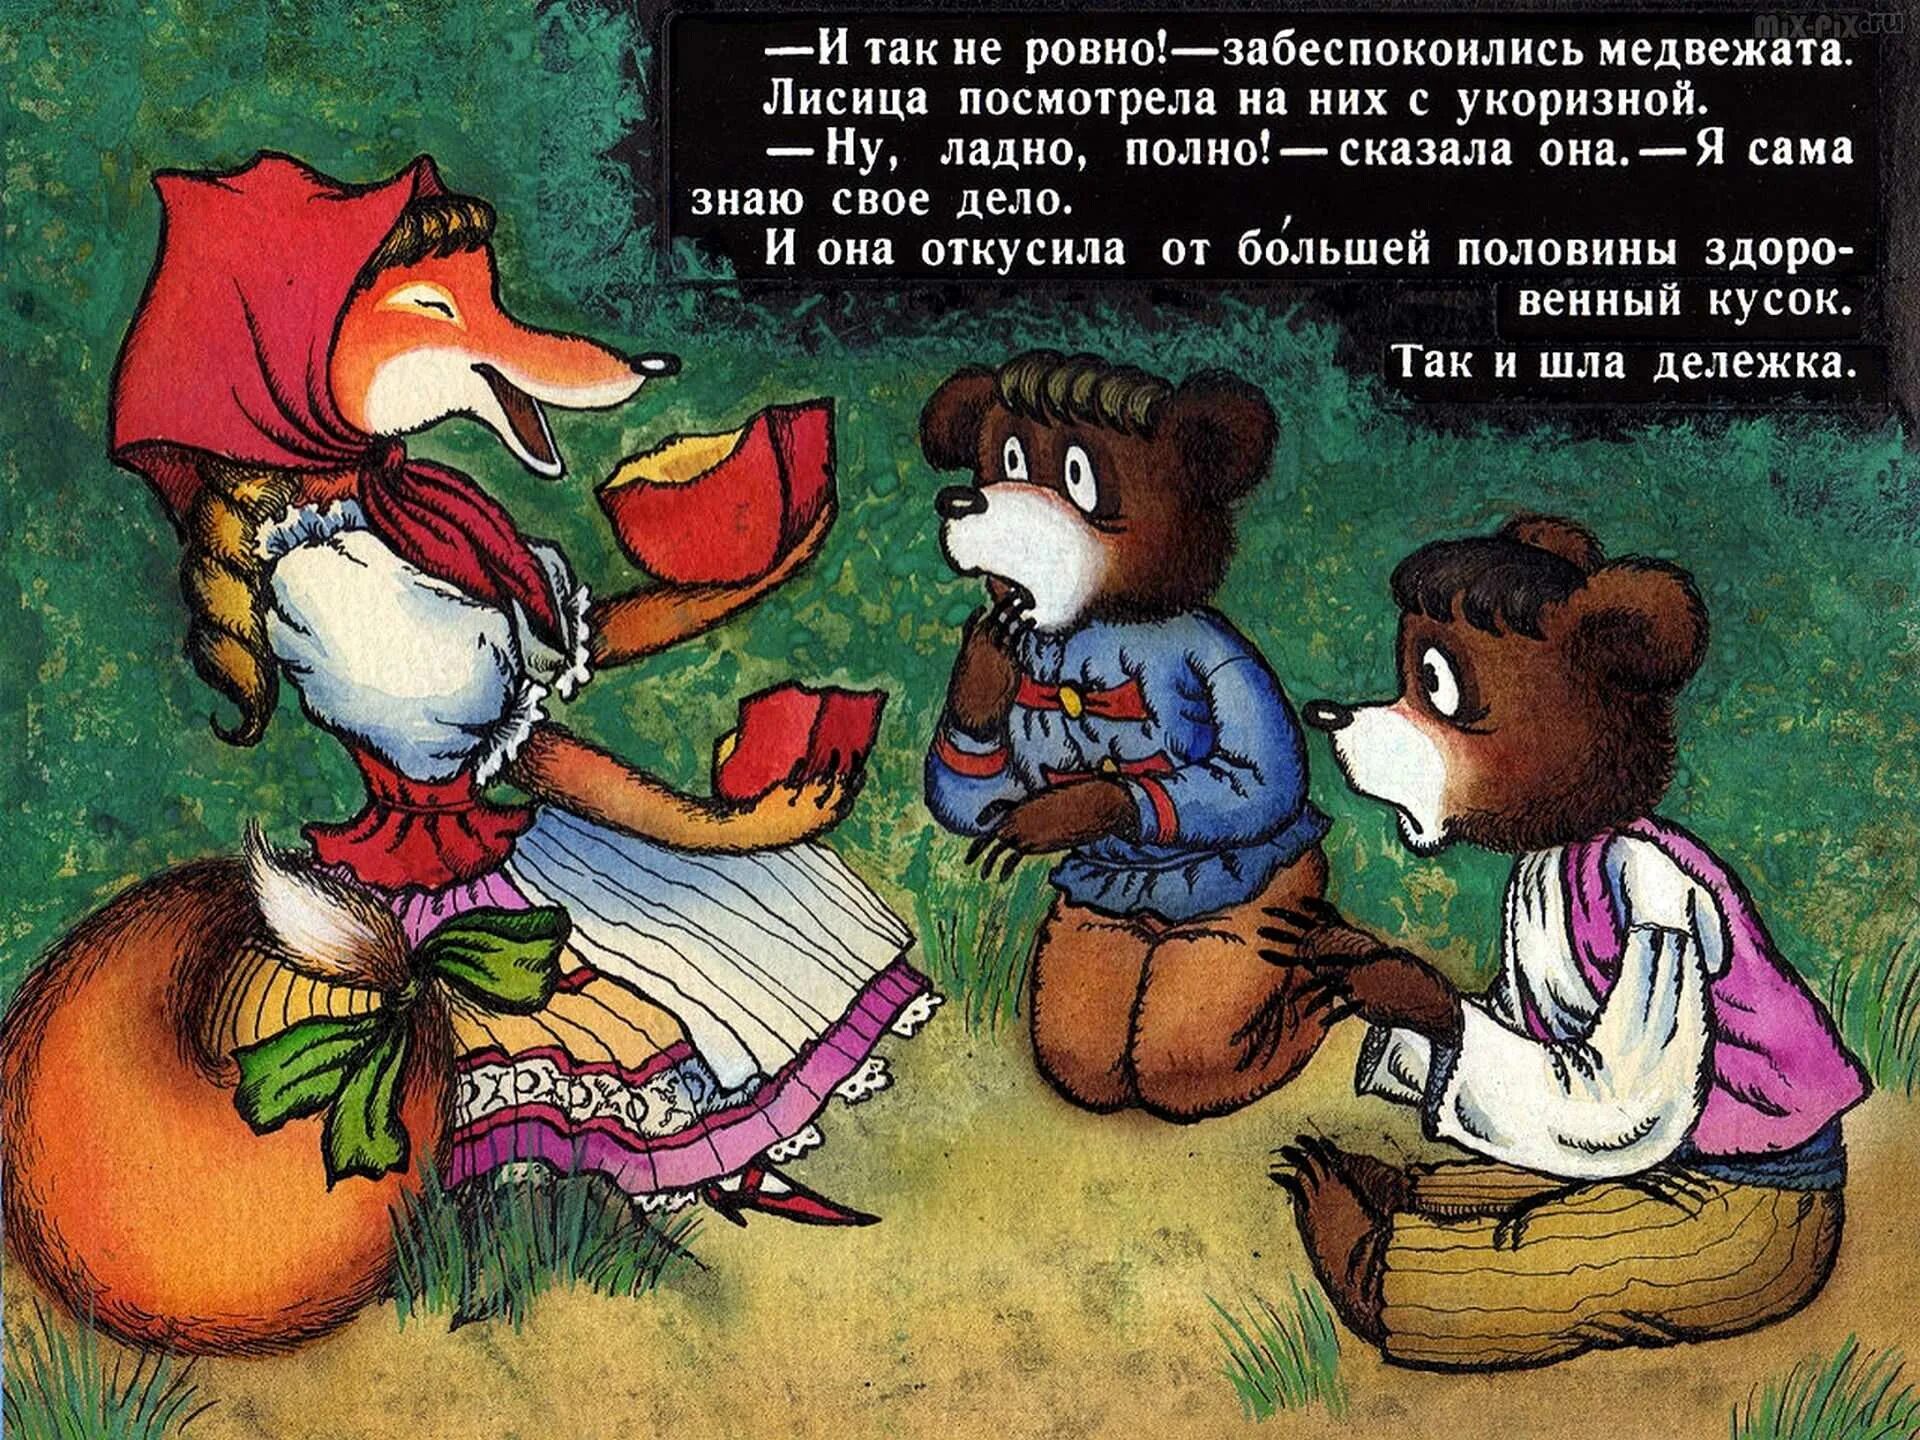 Венгерская сказка 2 жадных медвежонка. Сказка 2 жадных медвежонка. Венгерская сказка два жадных Медв. Два жадных медвежонка венгерская народная сказка.